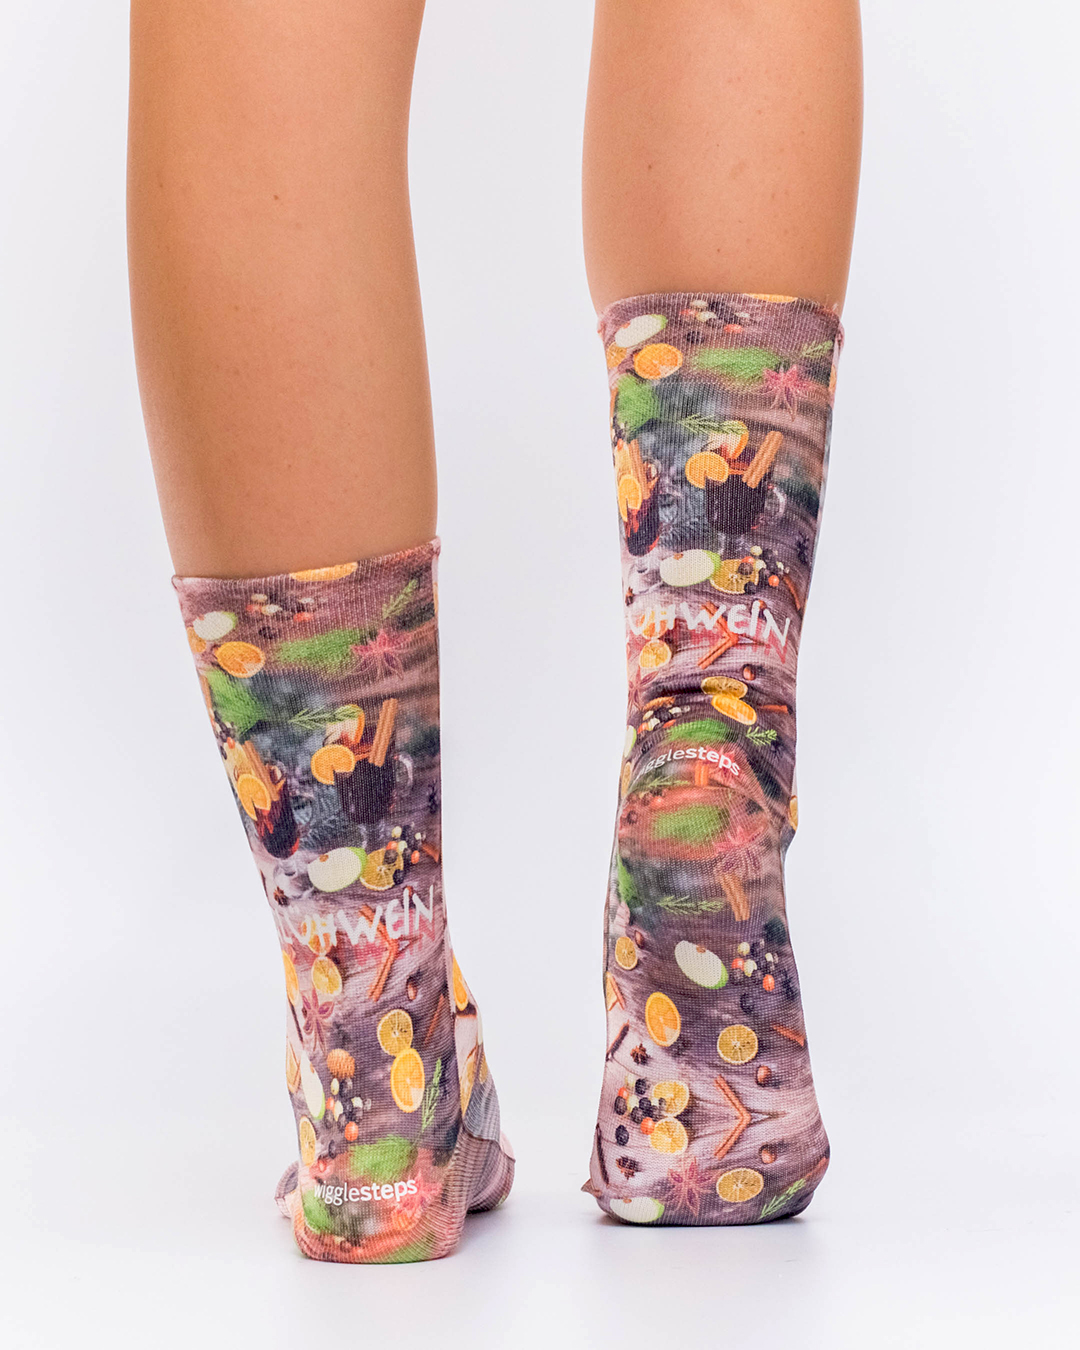 Socken wigglesteps Lady Socks Glühwein Size 36-40 Weihnachtssocken